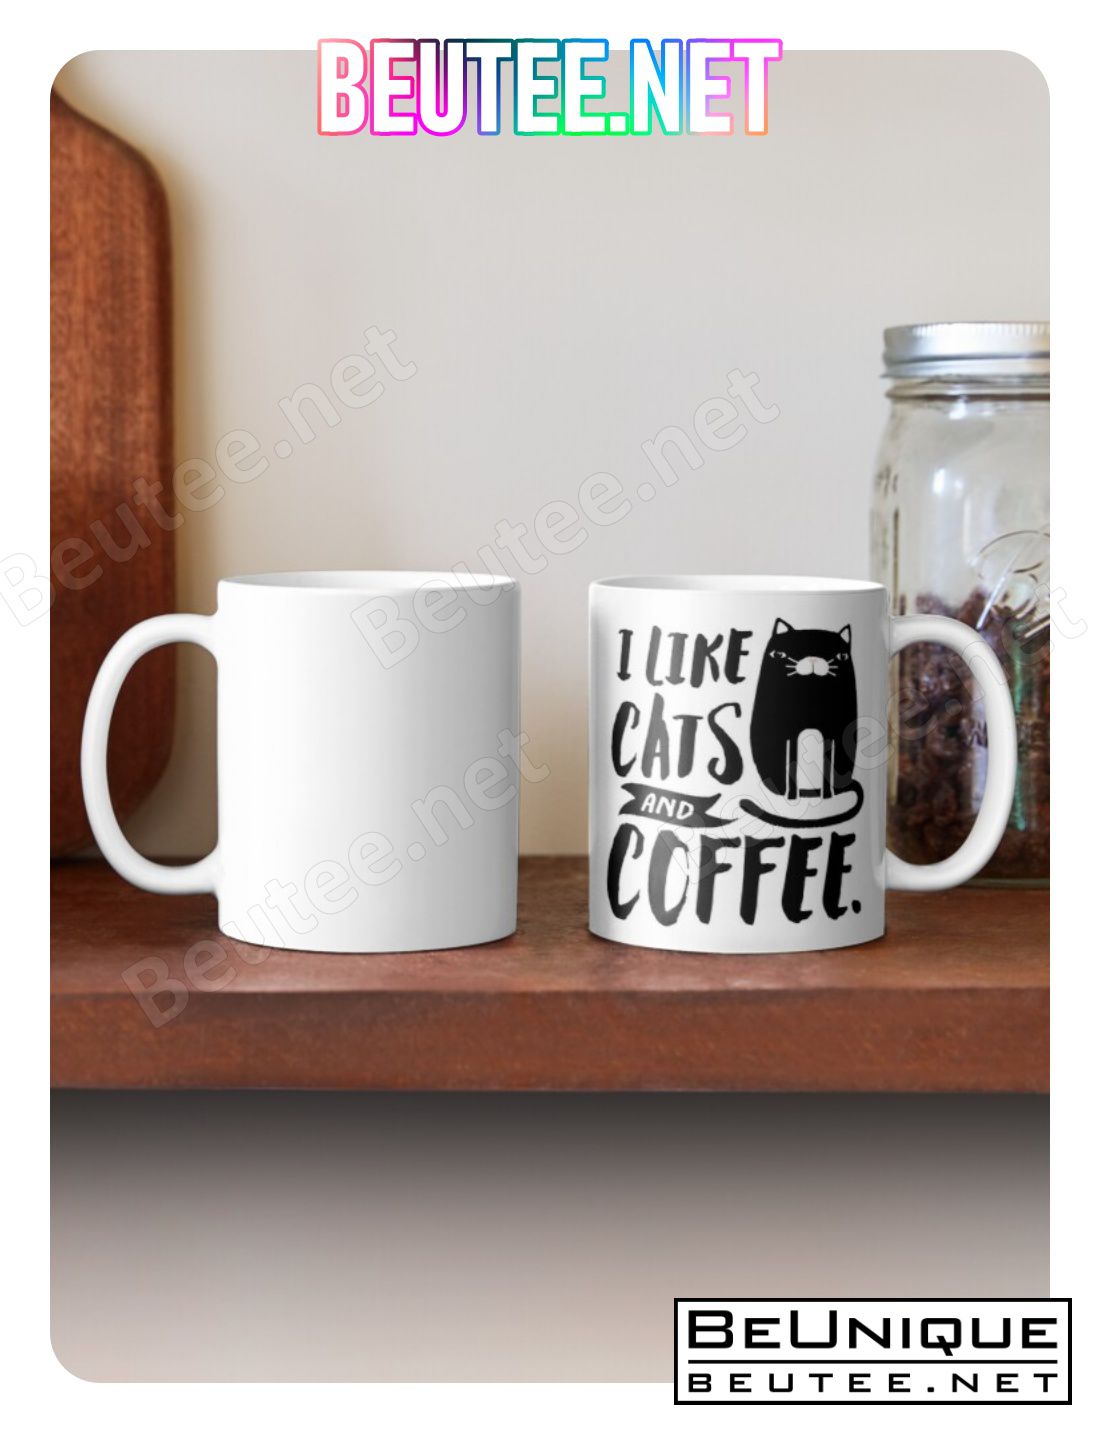 I Like Cats And Coffee Coffee Mug